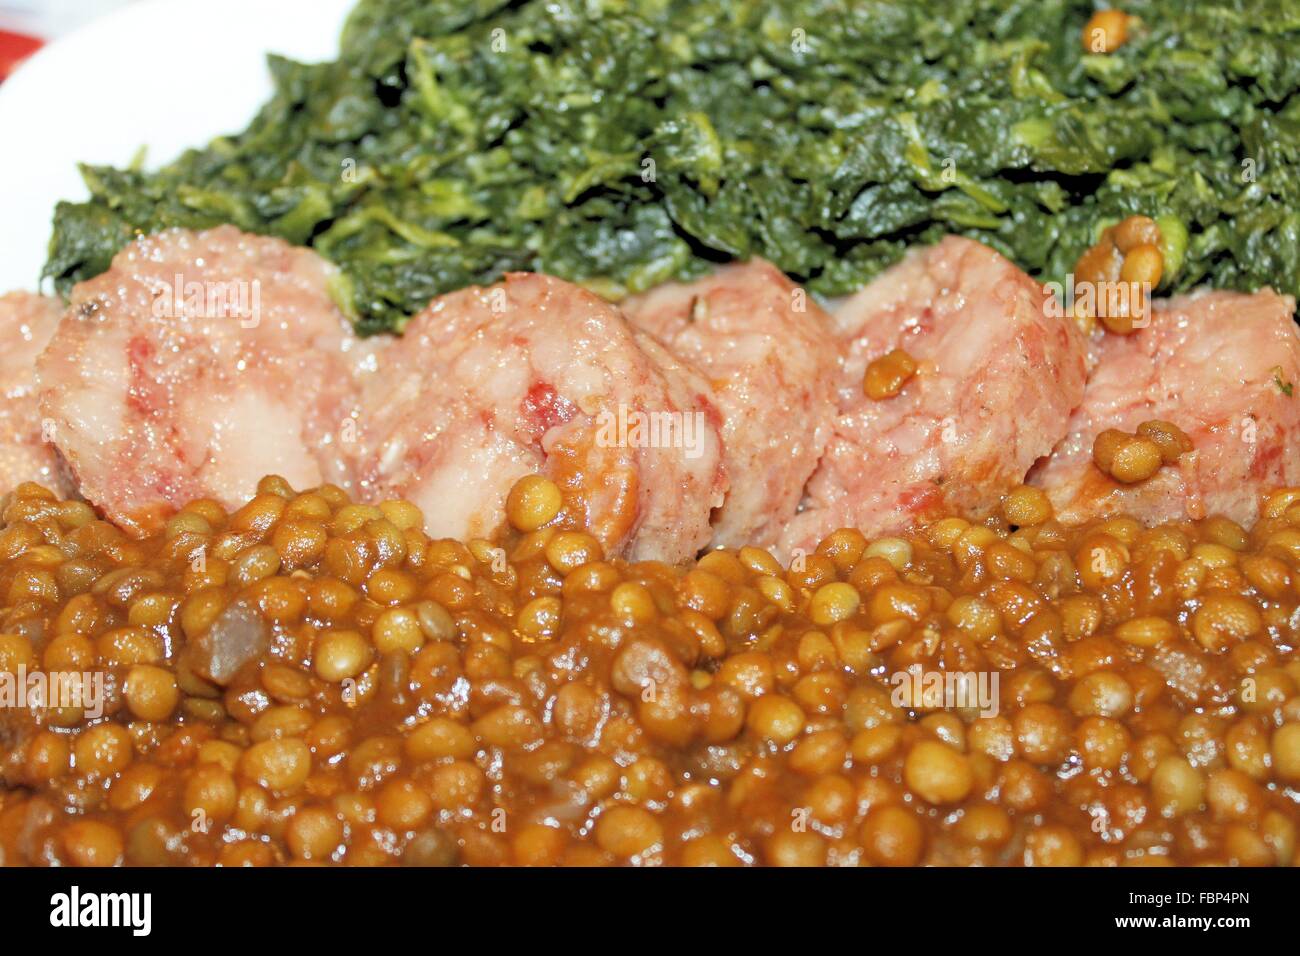 Piatto con spinaci lessati, salame cotto e lenticchie Foto Stock